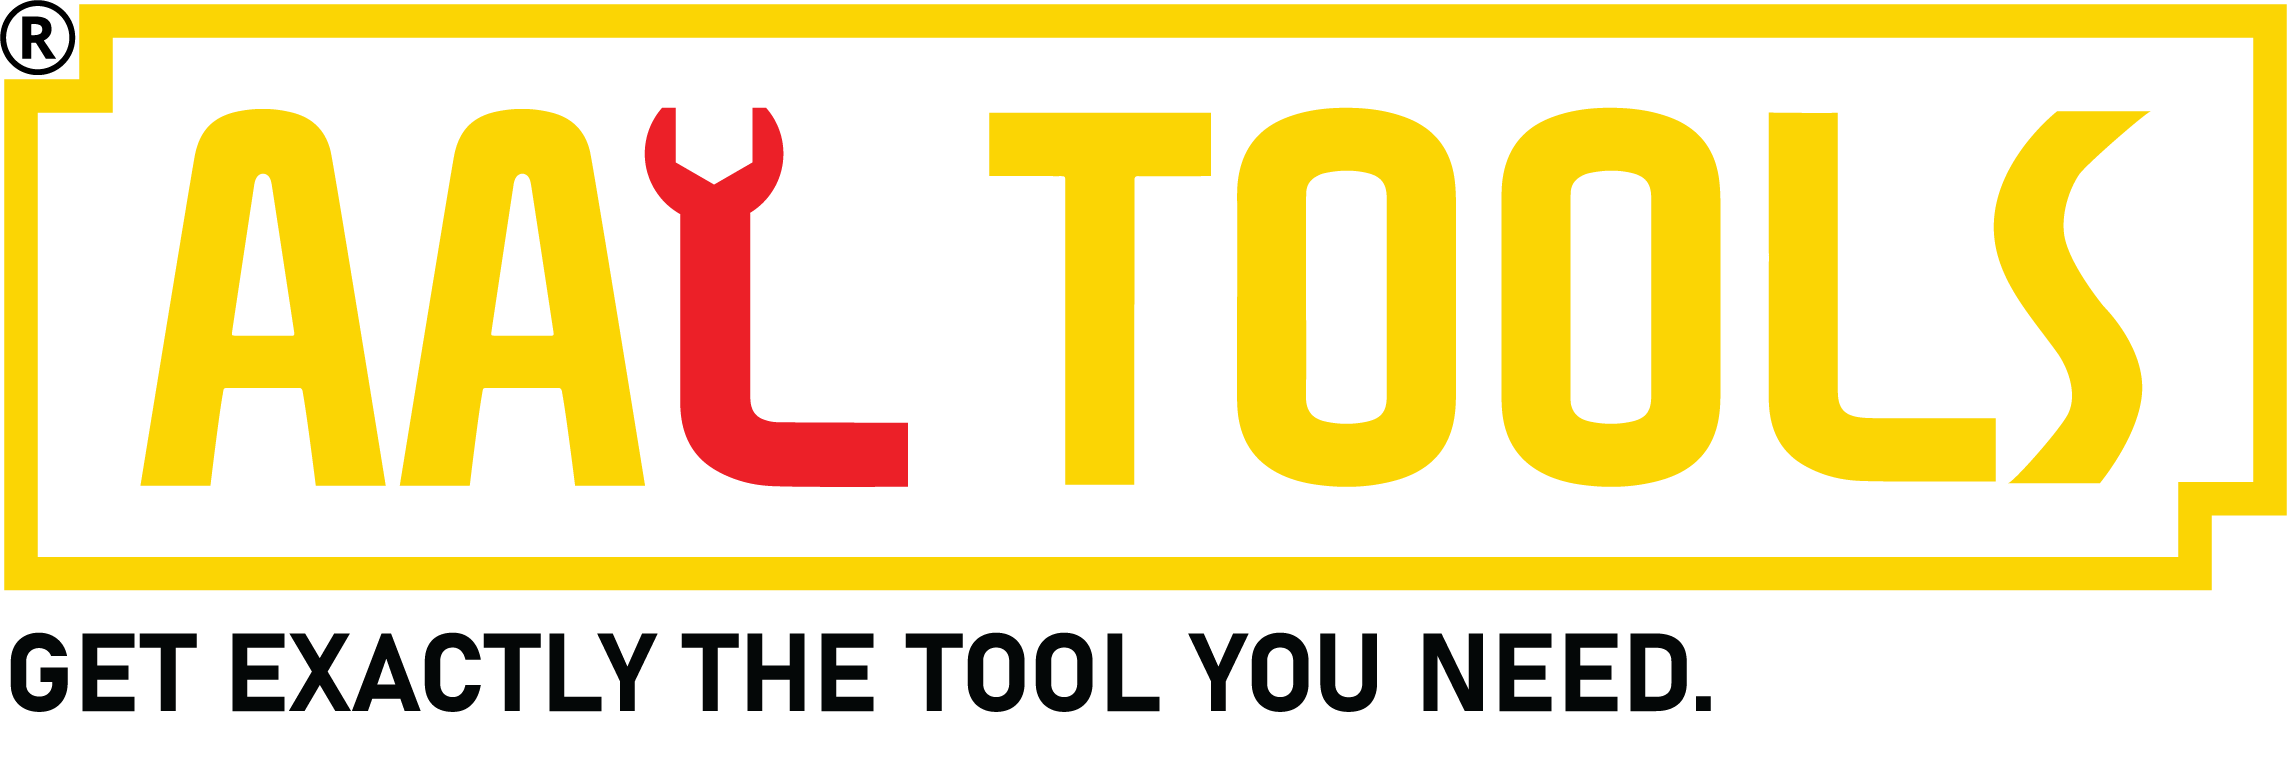 aal-tools